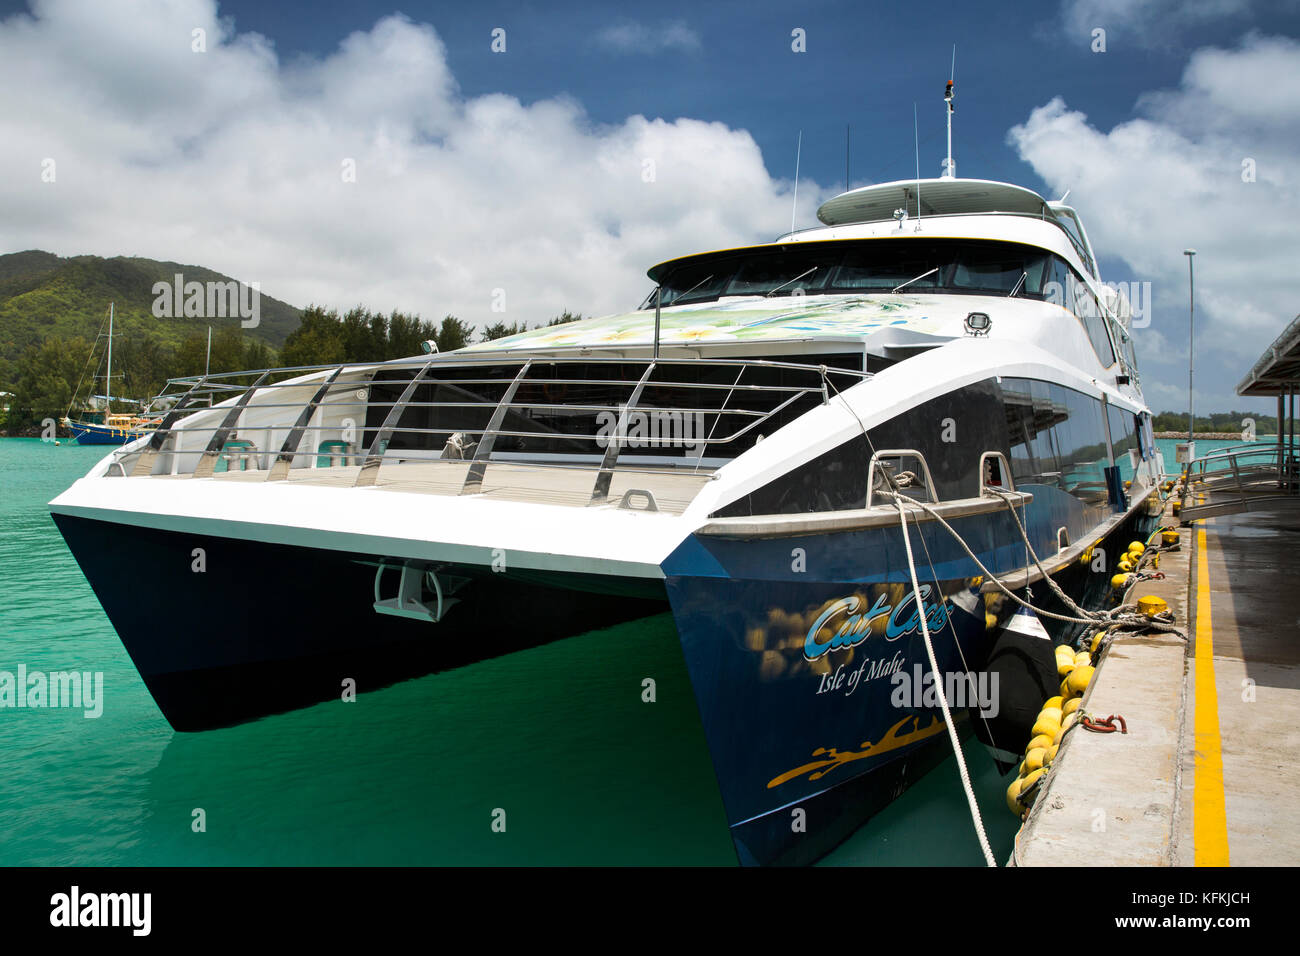 Les Seychelles, Praslin, Baie St Anne, jetty, l'île de Mahe Cat Cocos inter island ferry bateau catamaran Banque D'Images